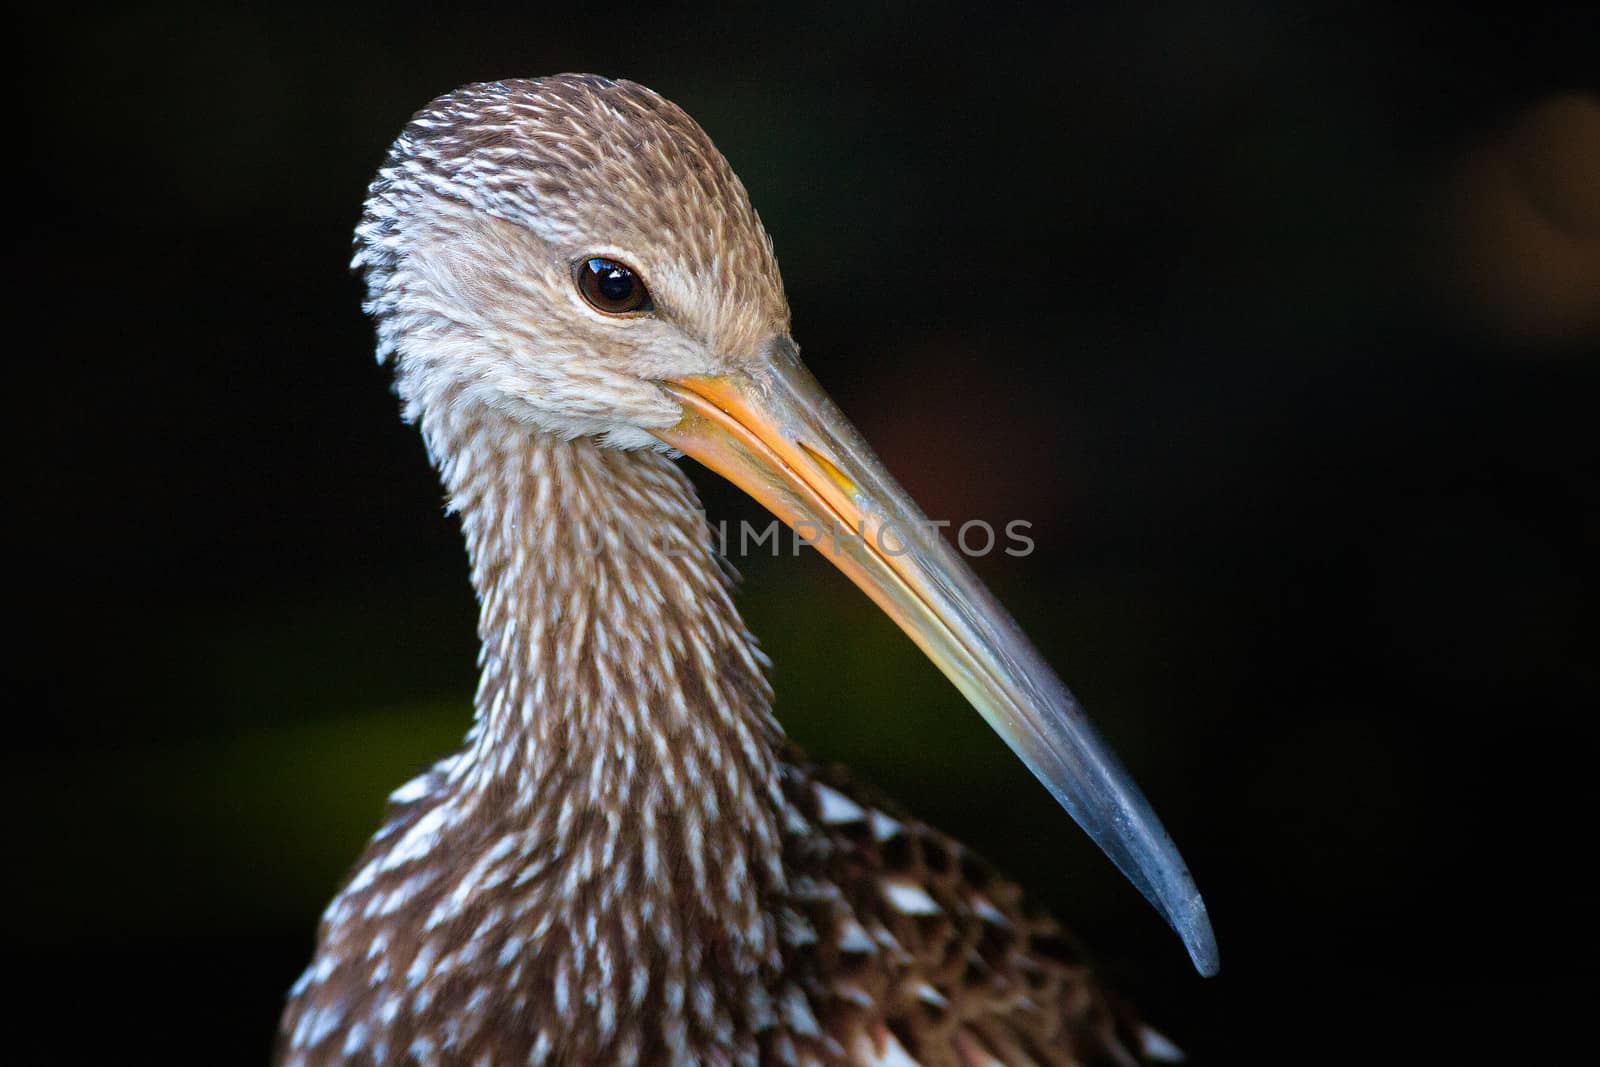 Bird with long beak or bill by CelsoDiniz